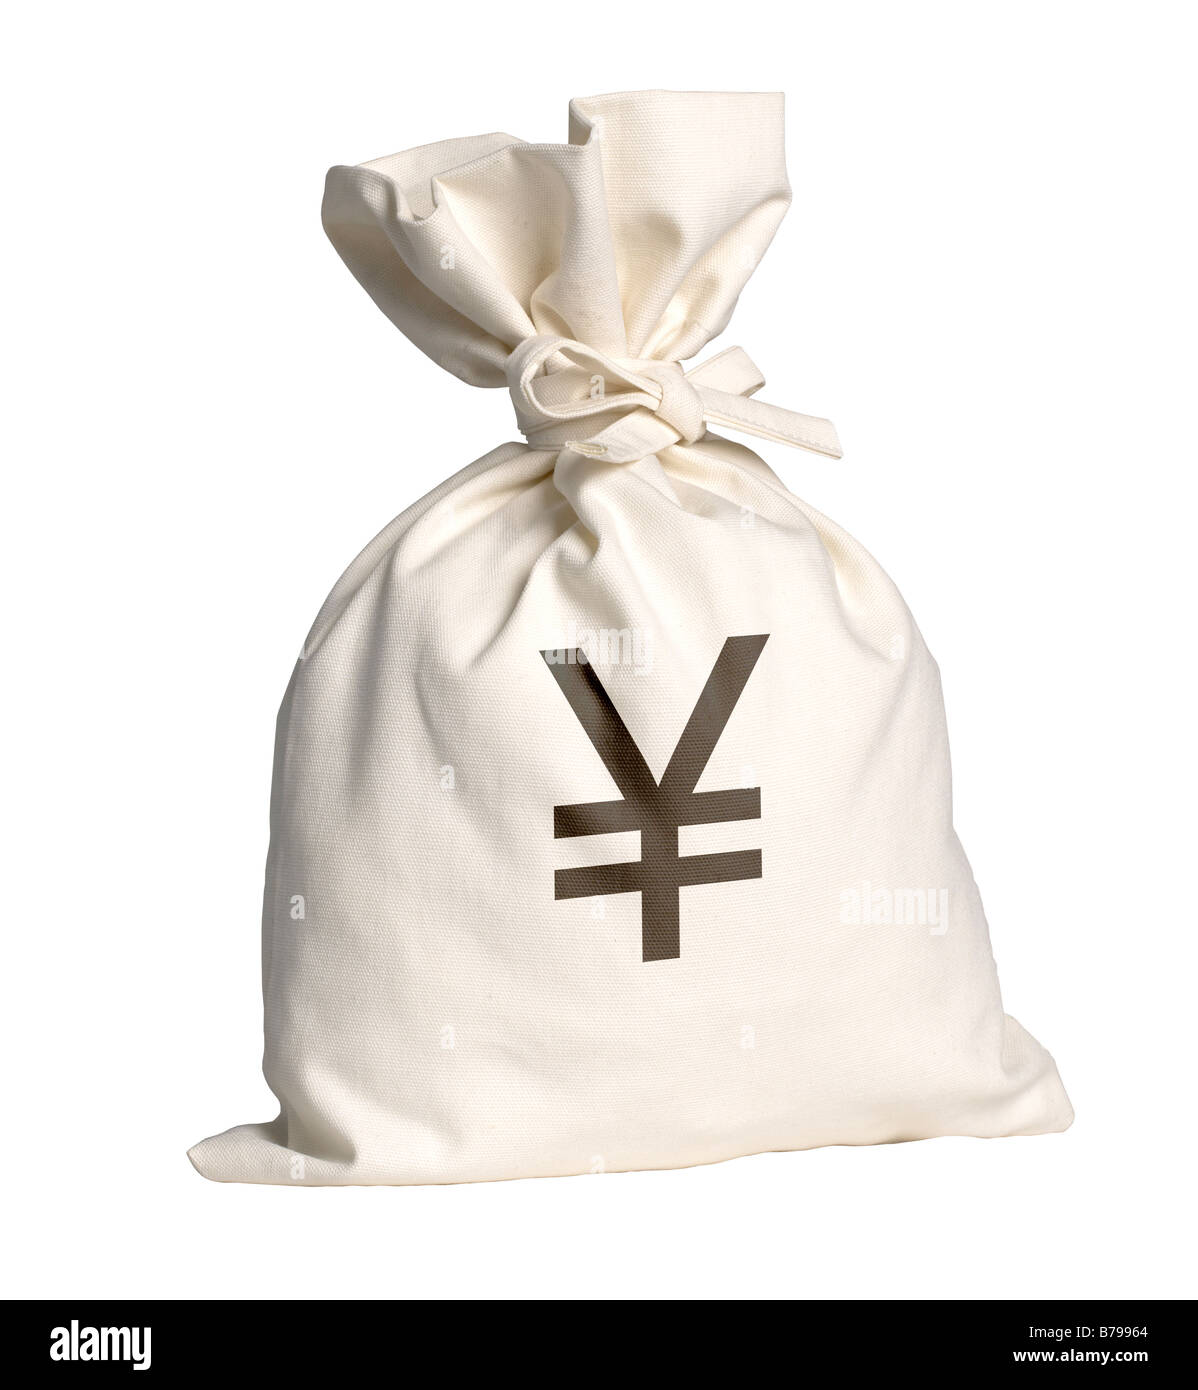 Sacco di denaro con il simbolo dello Yen Foto Stock